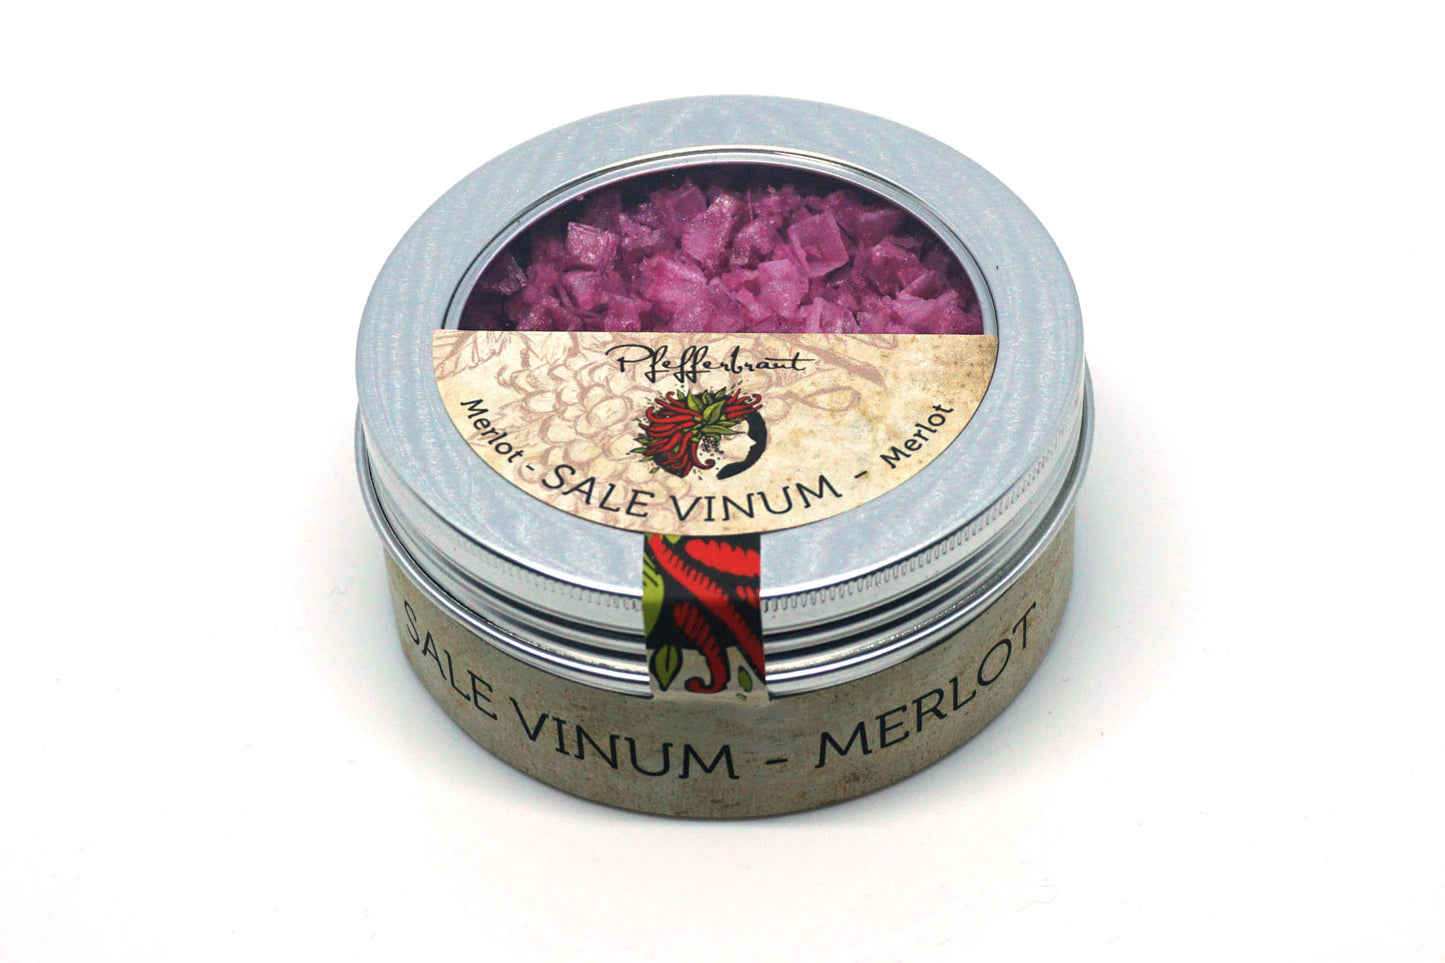 Sale Vinum Merlot - Manufaktursalz Pyramiden-Fleur de Sel